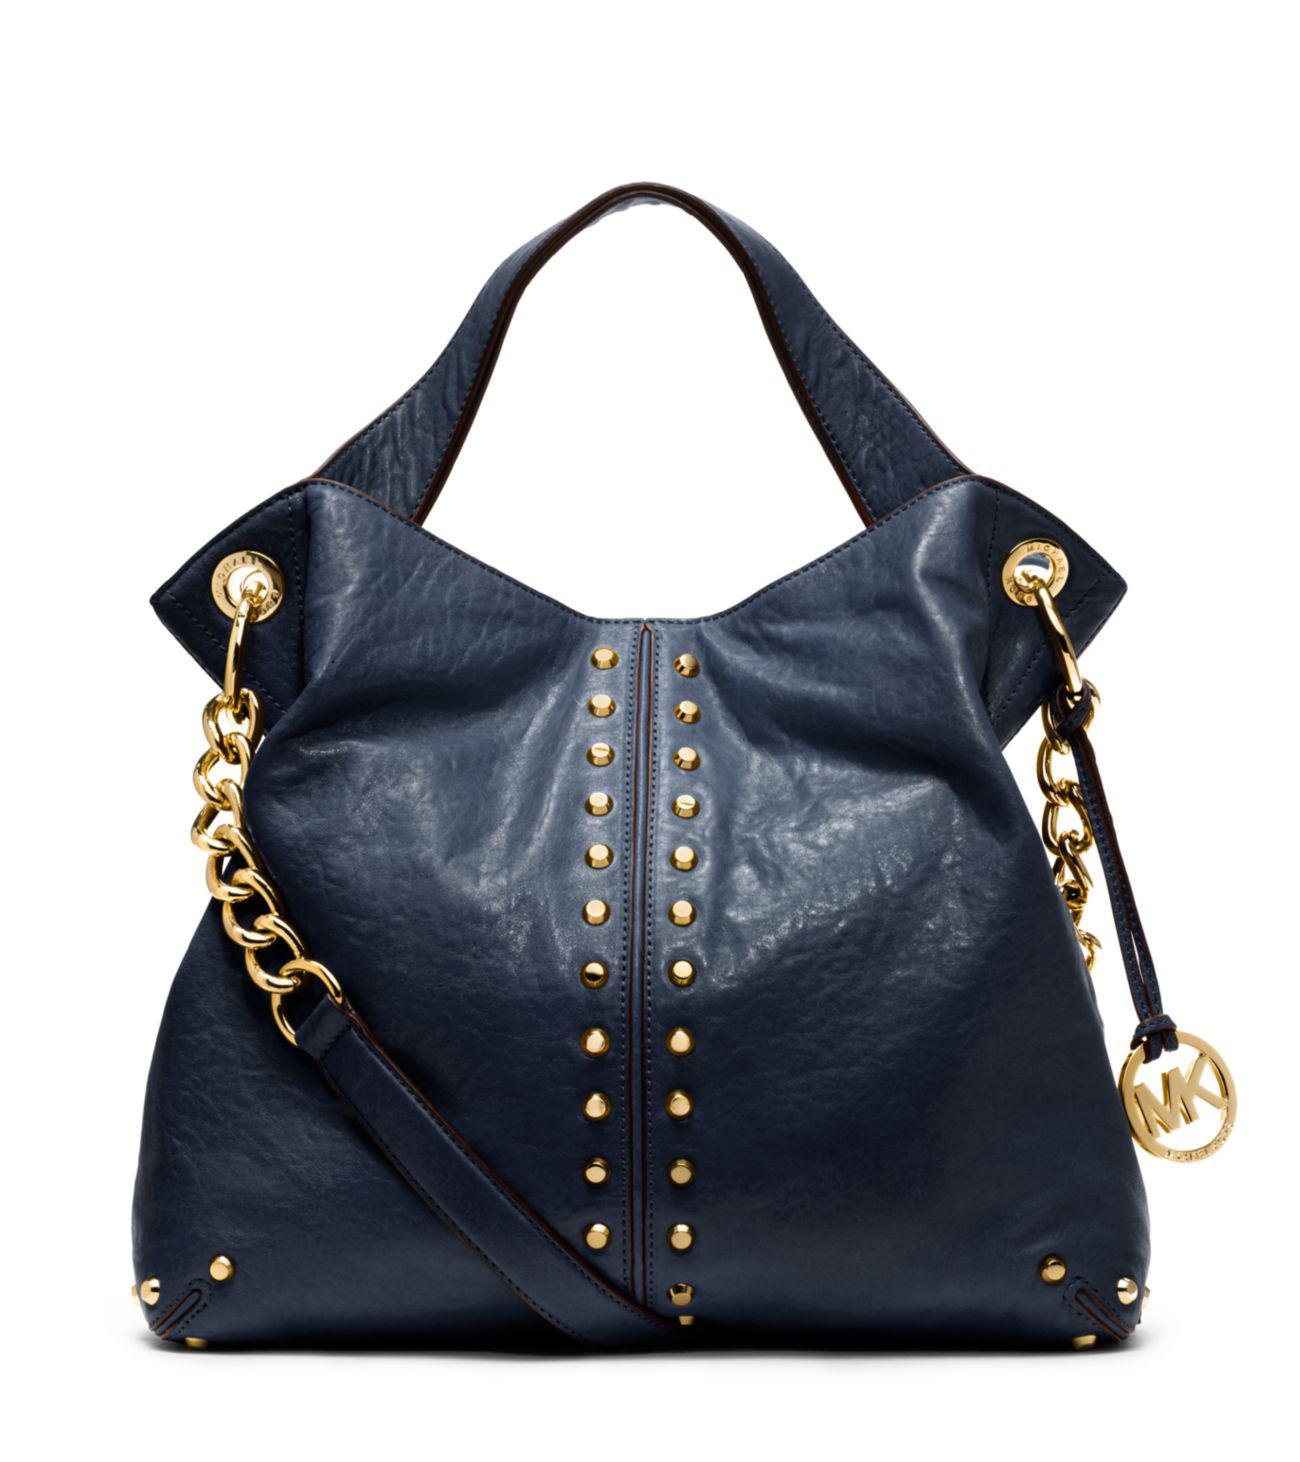 Michael Kors Astor Leather Shoulder Bag in Blue - Lyst